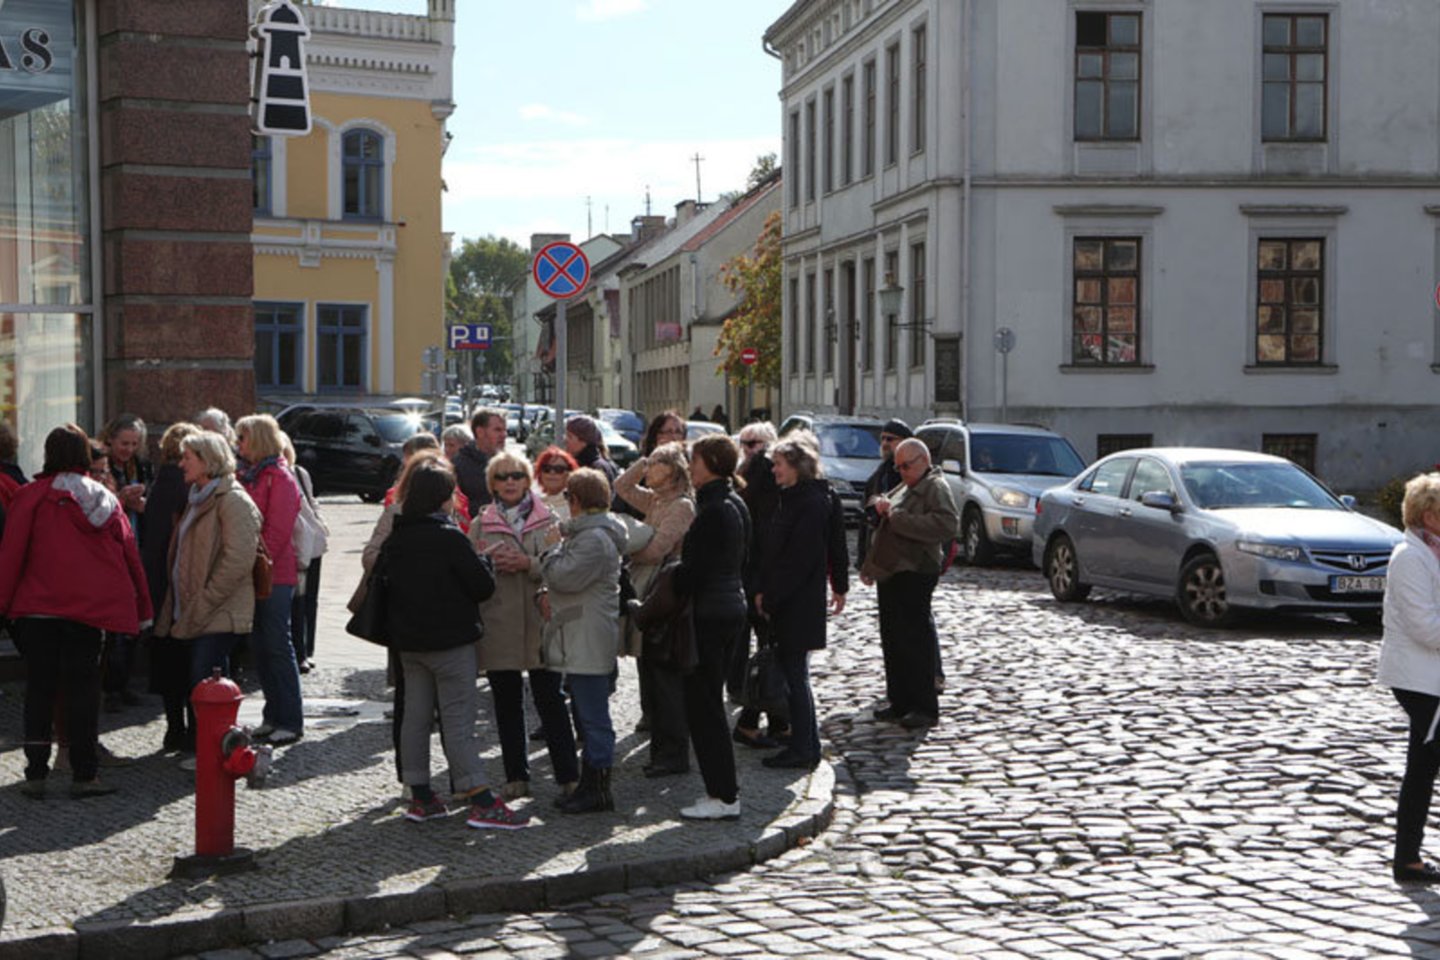 Anksčiau smulkiuosius verslininkus Klaipėdos senamiestyje gelbėdavo turistai užsieniečiai, kurių pastaruoju metu beveik neliko.<br>Asociatyvi redakcijos archyvo nuotr.